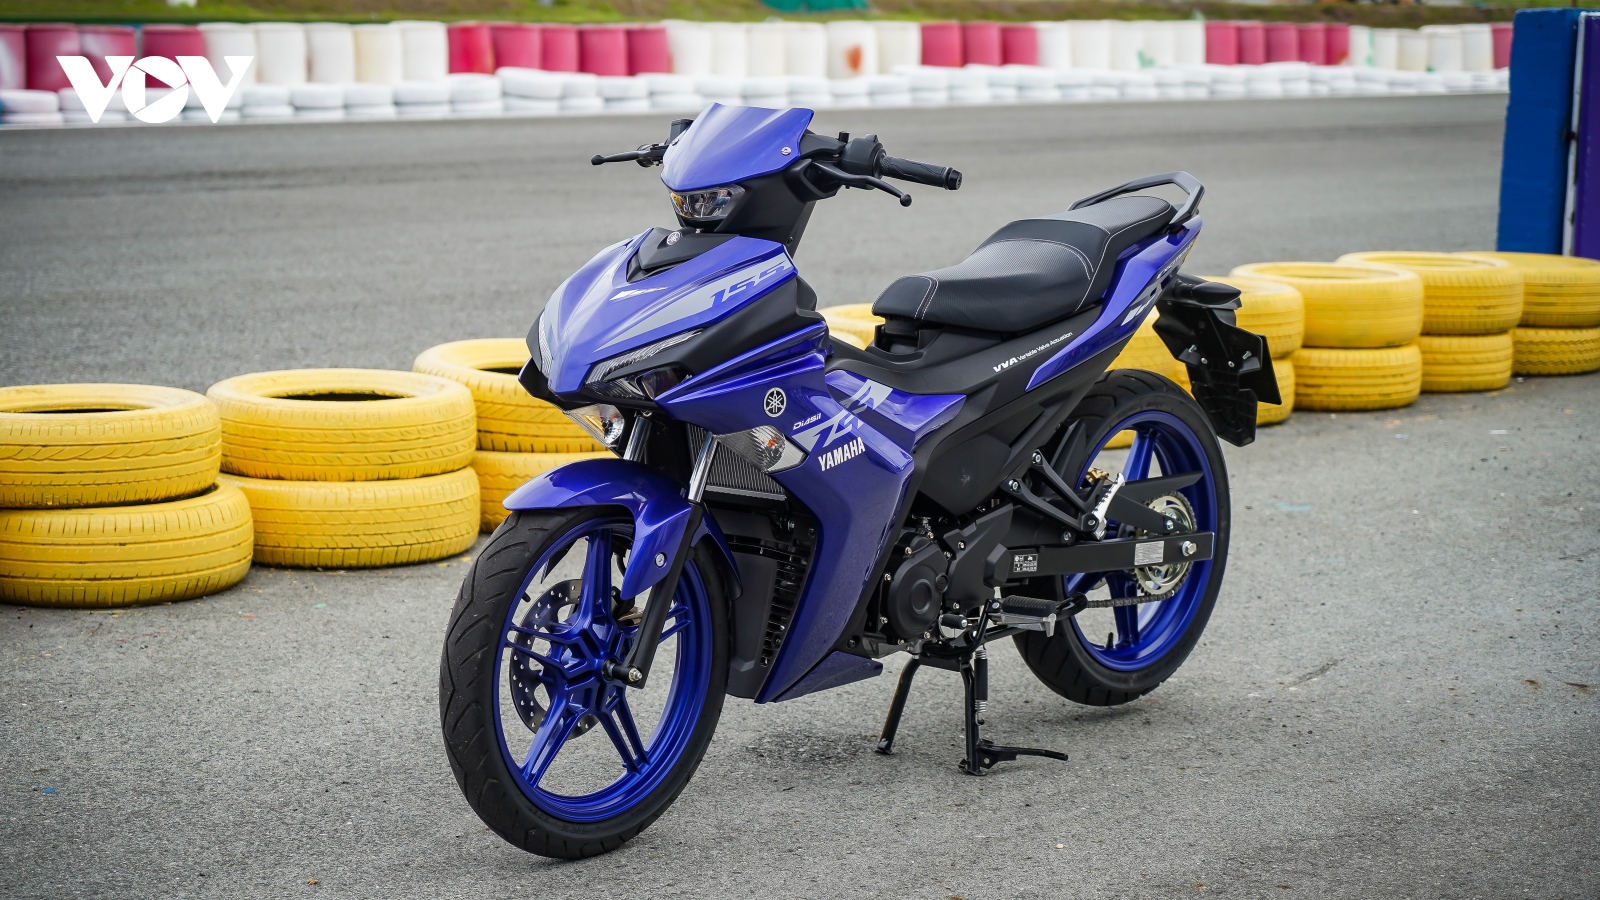 KHÁM PHÁ KIỆT TÁC NGHỆ THUẬT ĐƯỜNG PHỐ TRÊN EXCITER 155 VVA  Yamaha  Motor Việt Nam